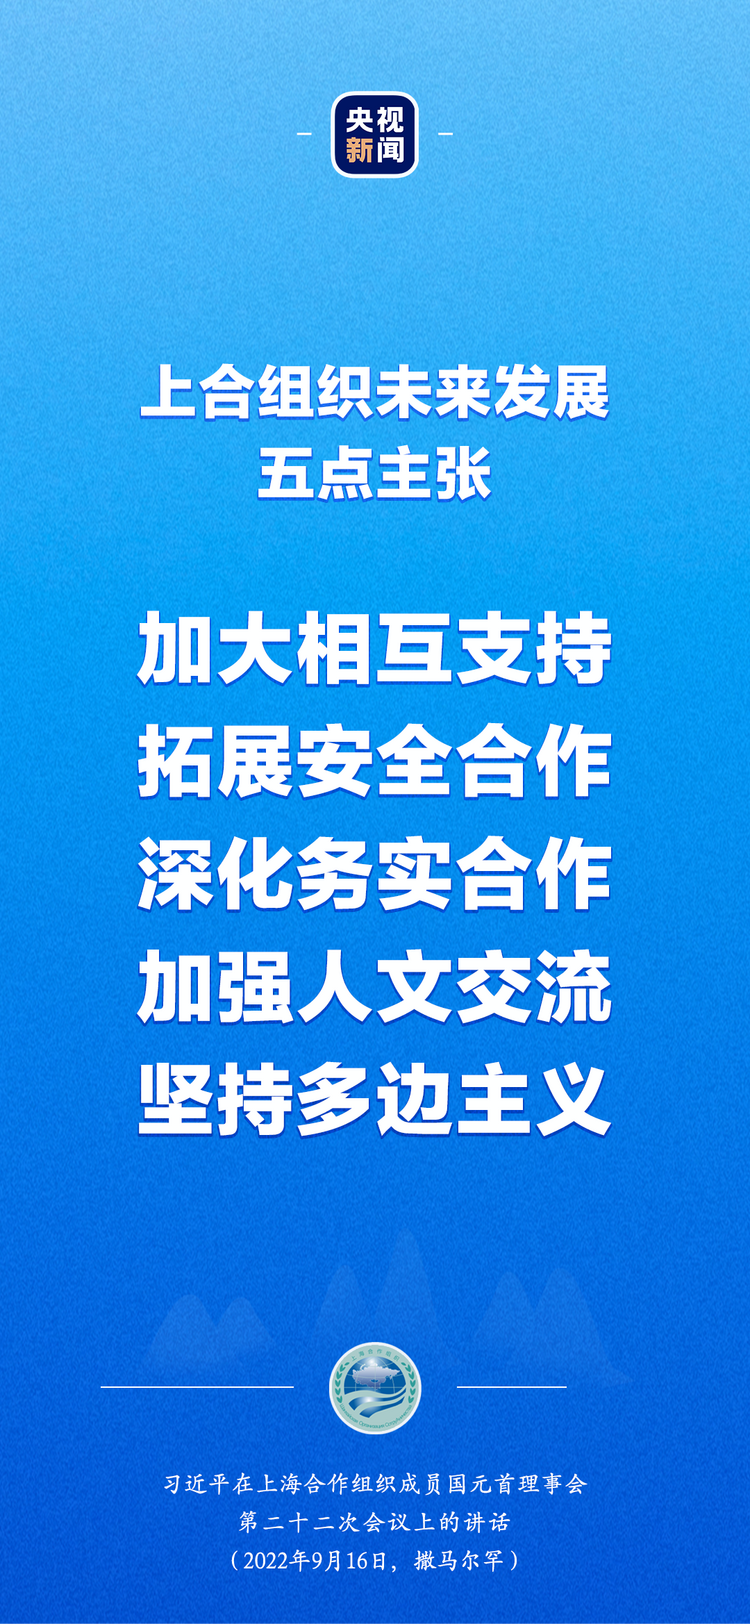 習近平出席上合組織峰會：“上海精神”是上合組織必須長期堅持的根本遵循